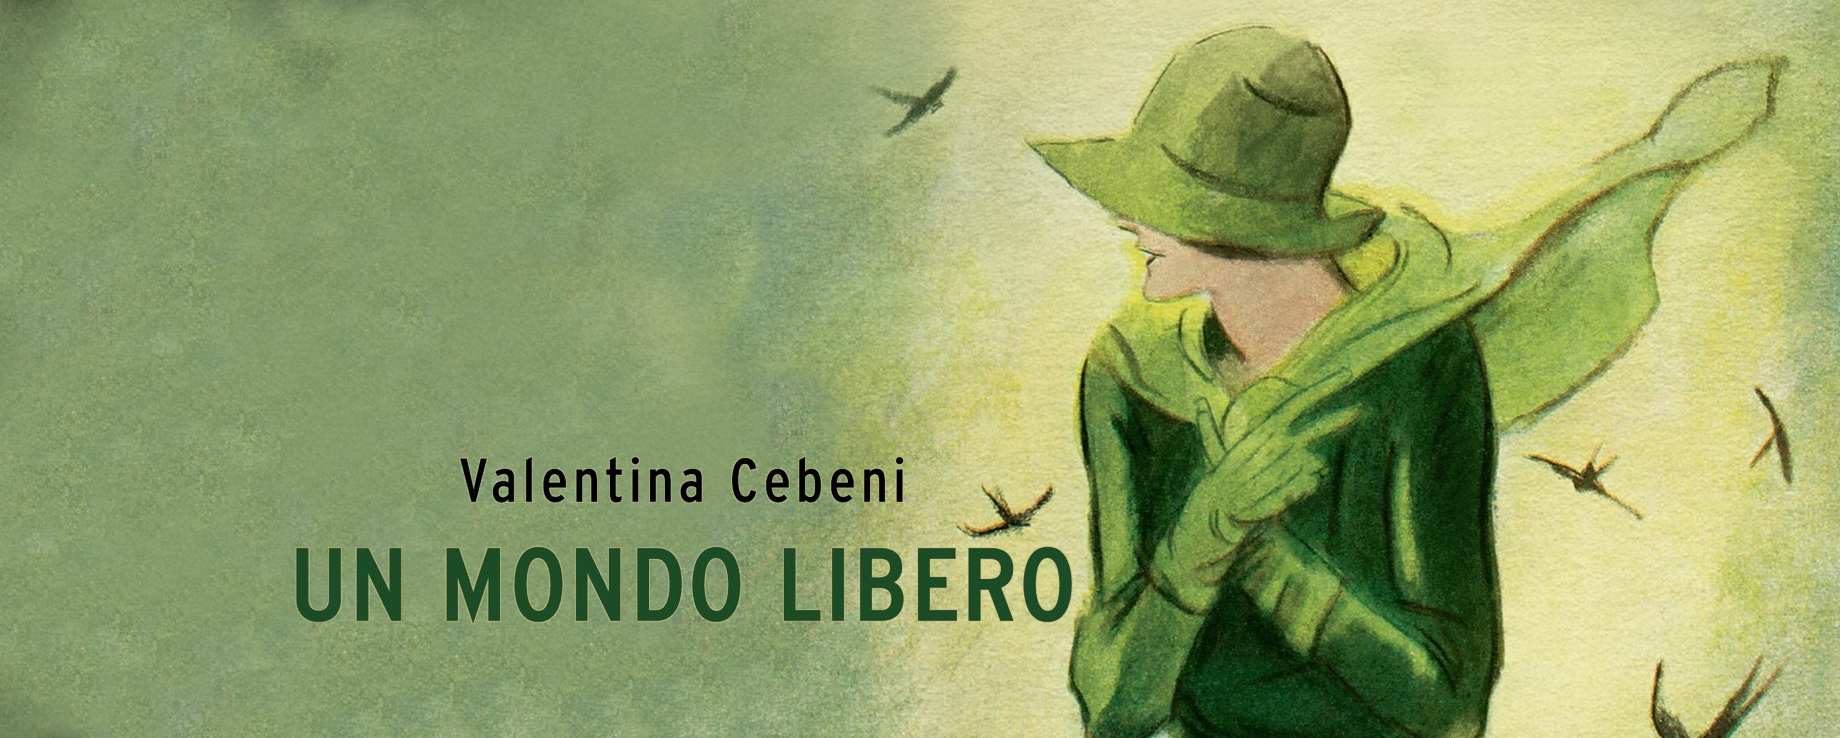 UN MONDO LIBERO: intervista all’autrice Valentina Cebeni